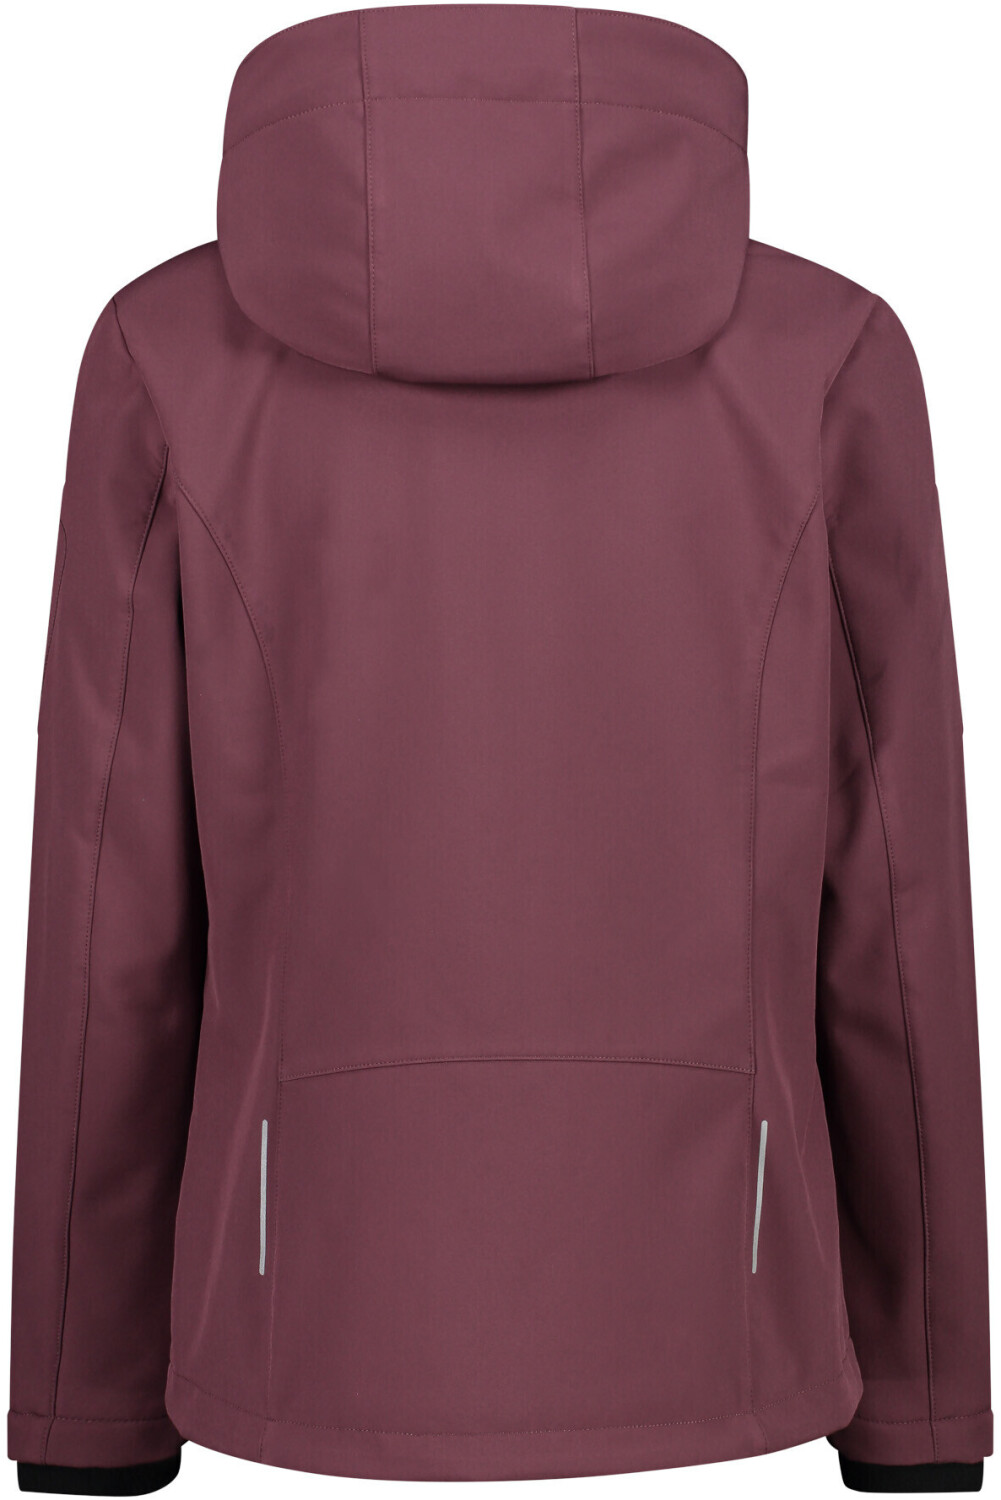 Jacket bei ab Zip € Preisvergleich CMP Hood Woman (39A5006) 40,51 plum |